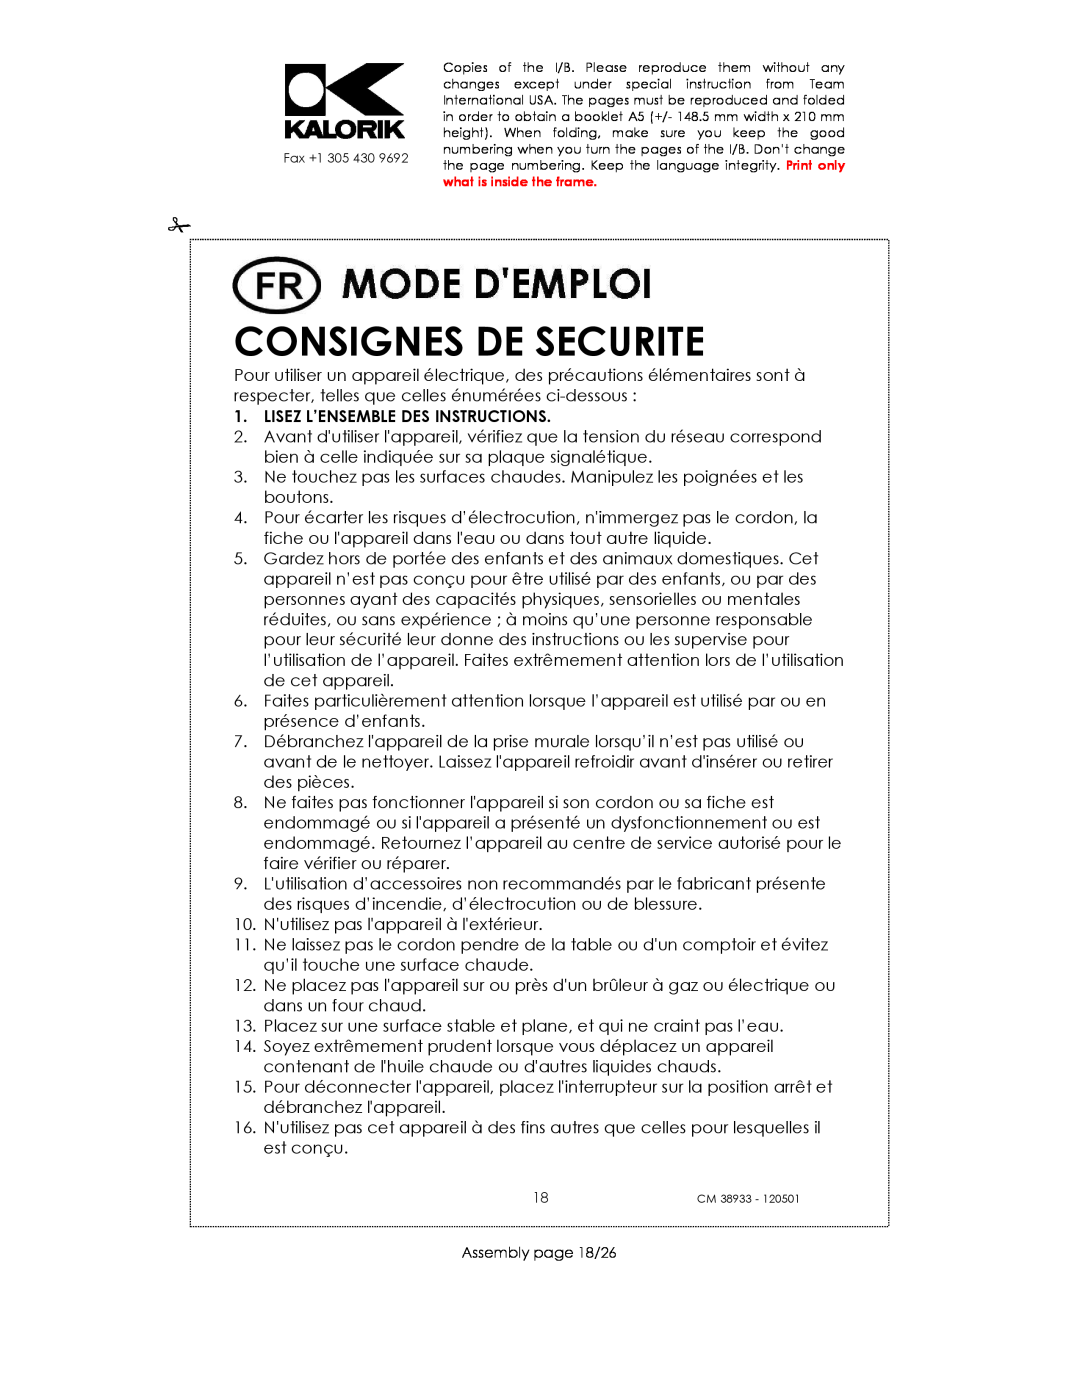 Kalorik CM 38933 manual Consignes De Securite, Lisez L’Ensemble Des Instructions 